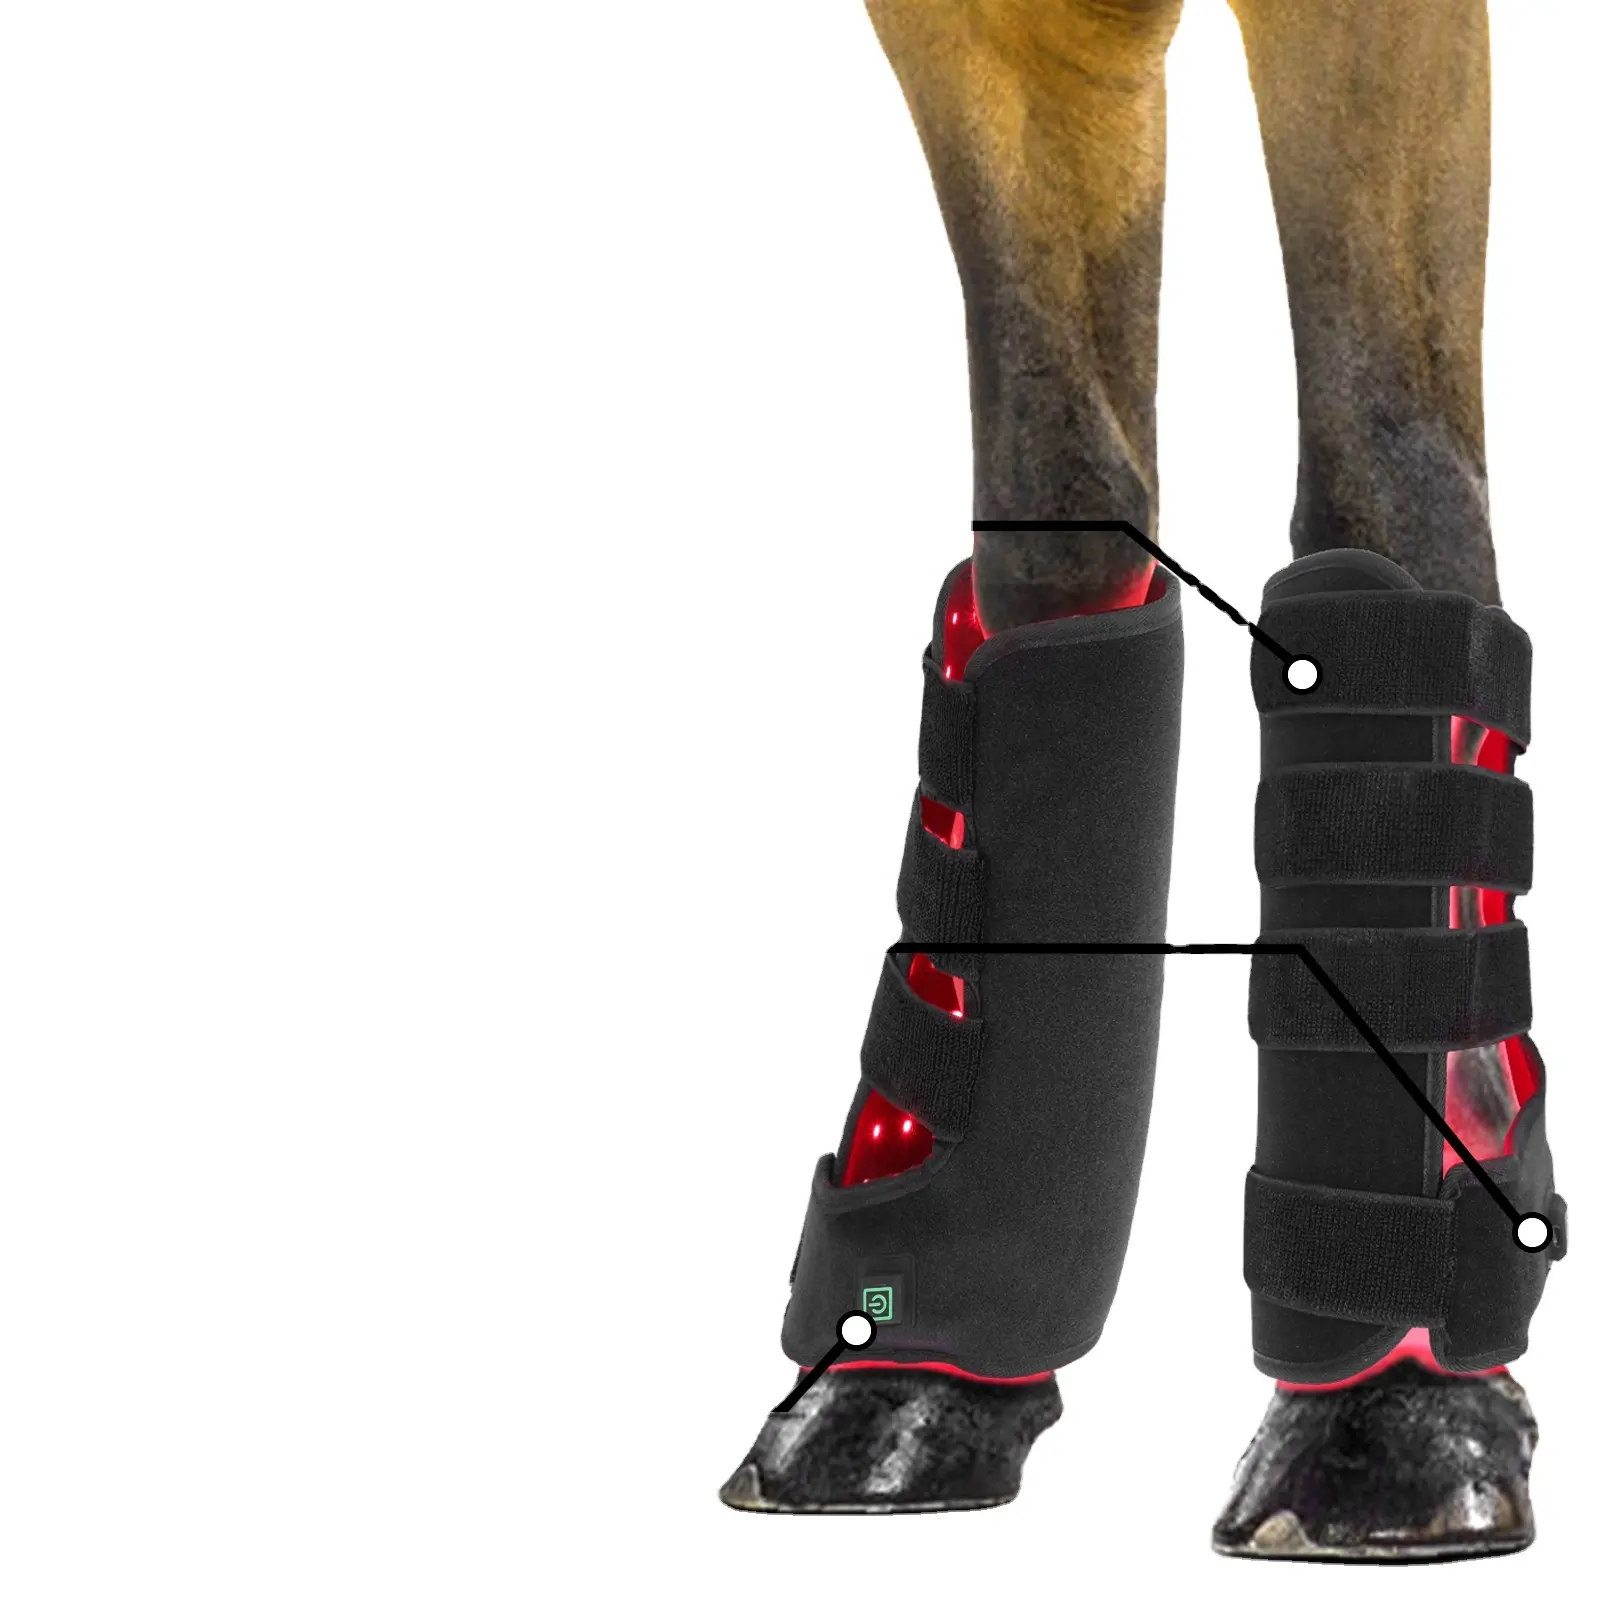 Yeni Model akülü at kırmızı işık tedavisi yara şifa çizmeler ped kablosuz kızılötesi terapi ağrı kesici için atlar